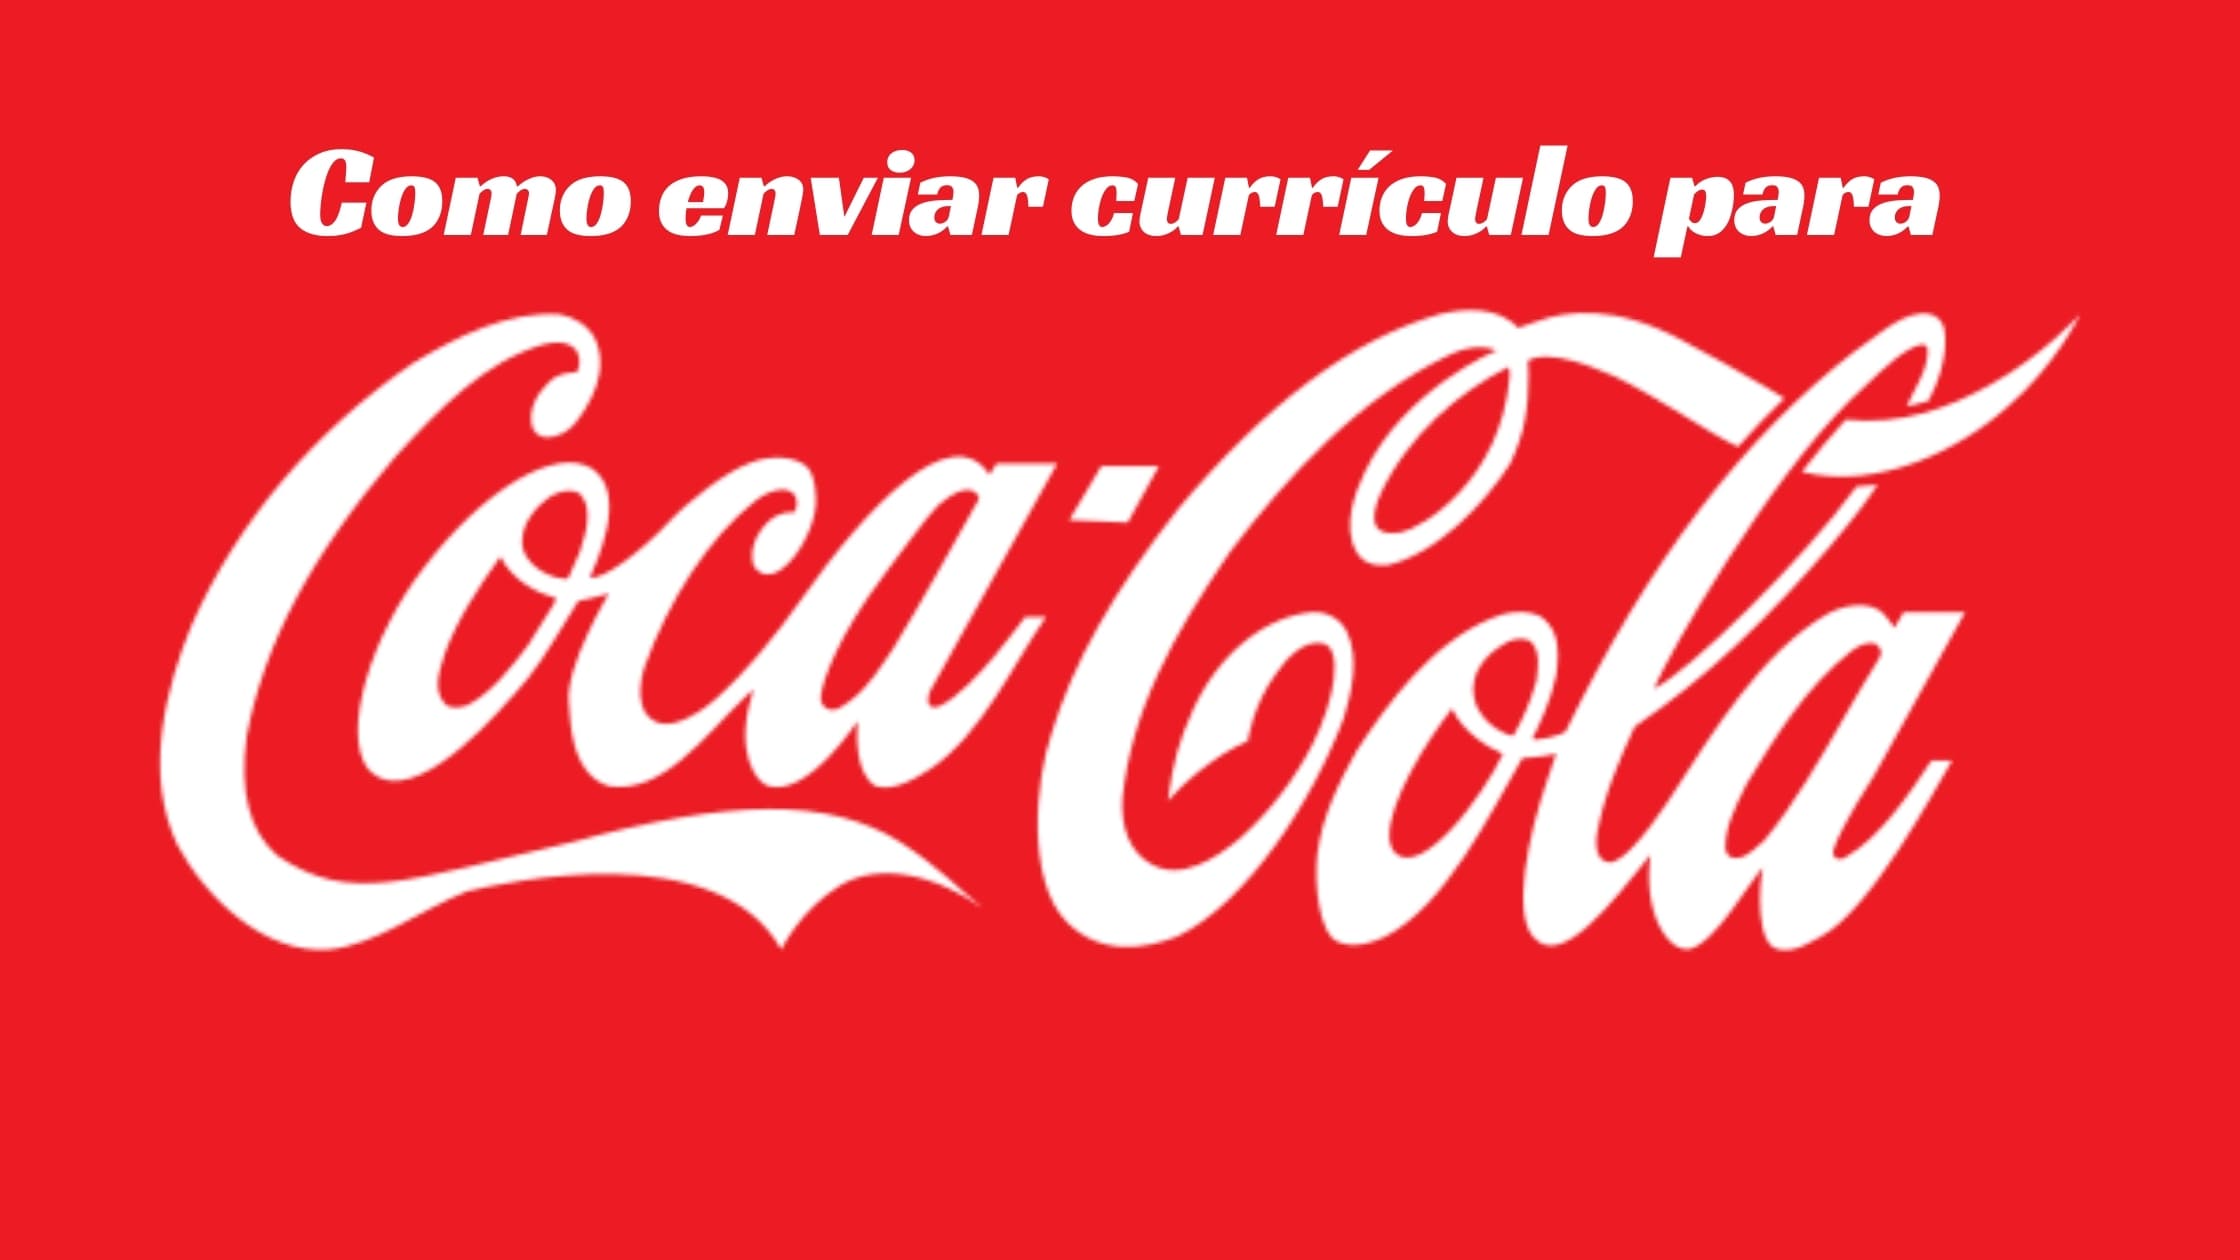 trabalhe conosco currículo Coca-Cola